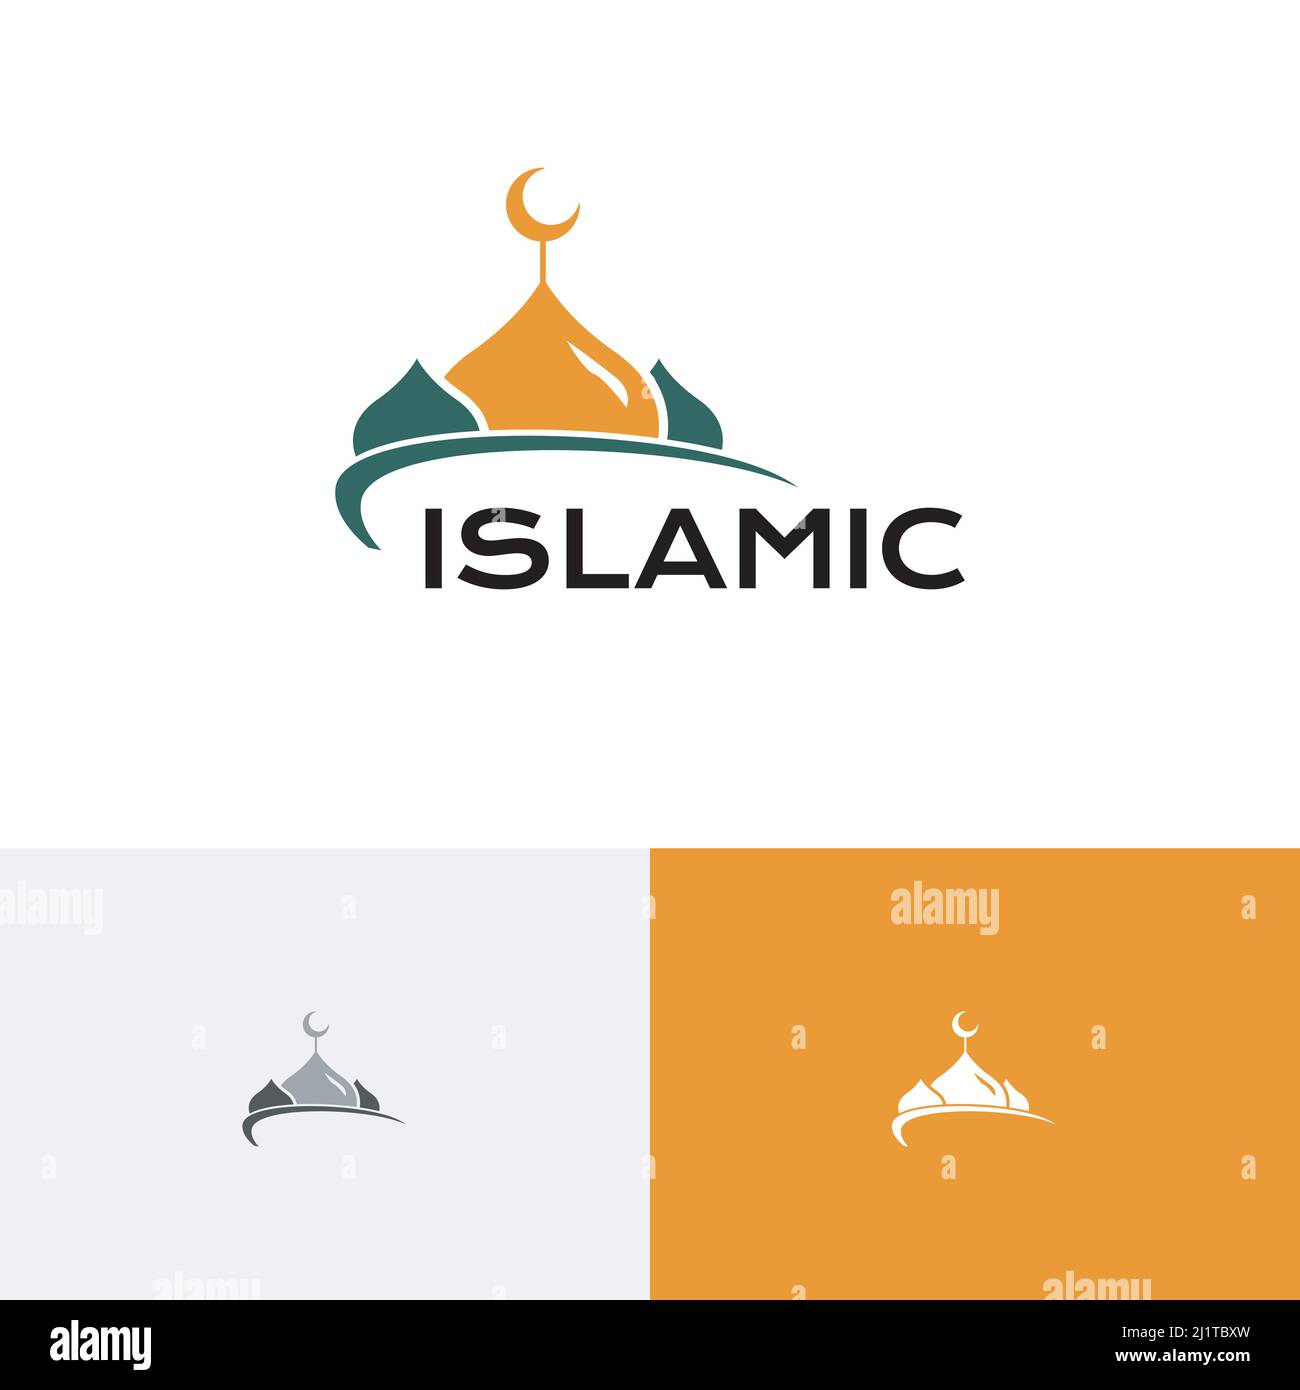 Moschea Dome Islamic Center Prayer Study Islam Musulmani Community Logo Illustrazione Vettoriale